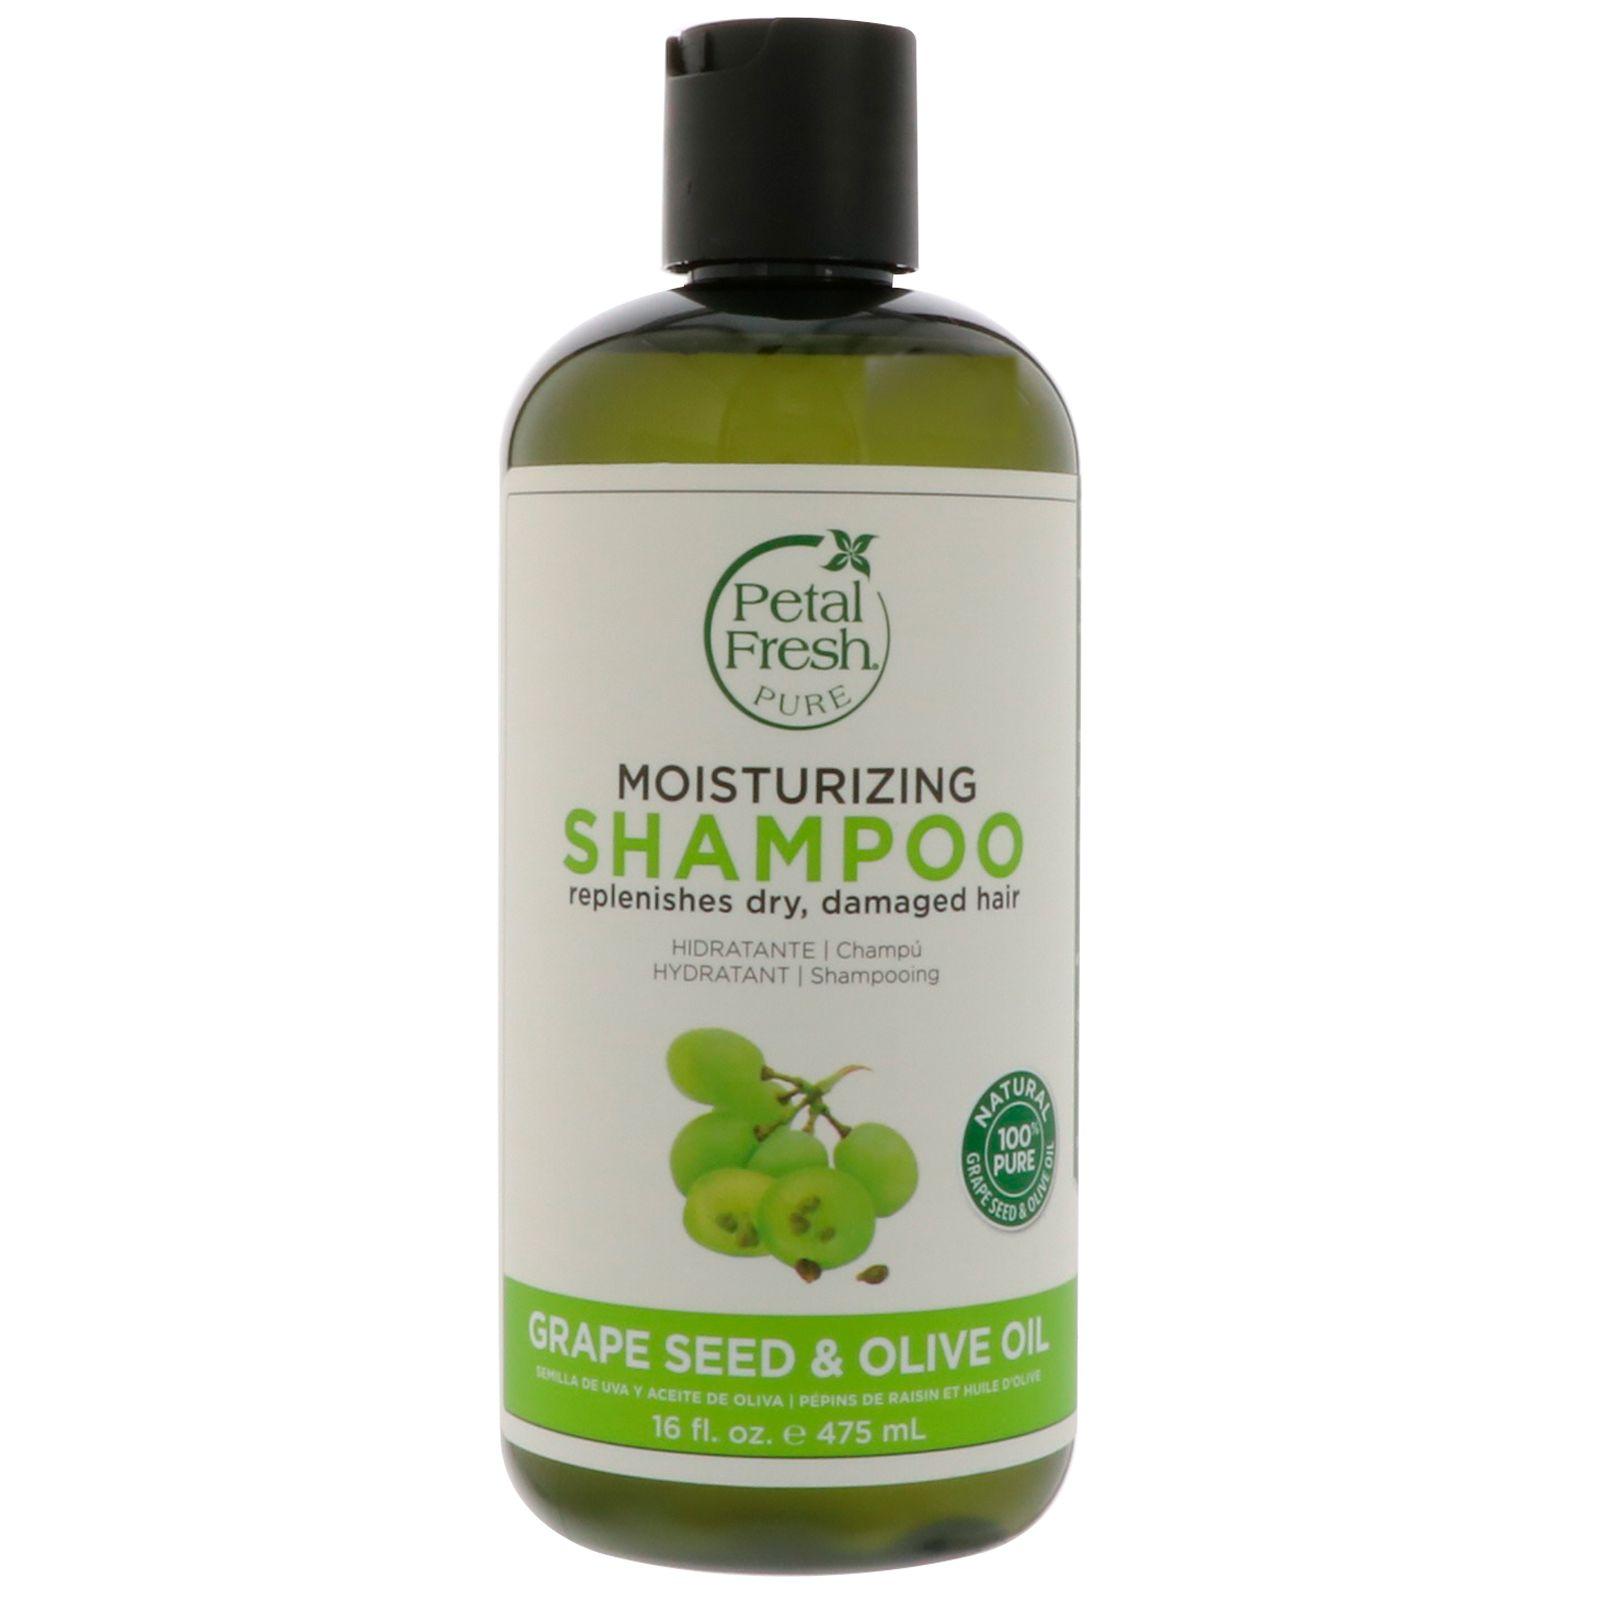 Shampoo Olive Logo - Petal Fresh, Pure, Age Defying Shampoo, Grape Seed & Olive Oil, 16